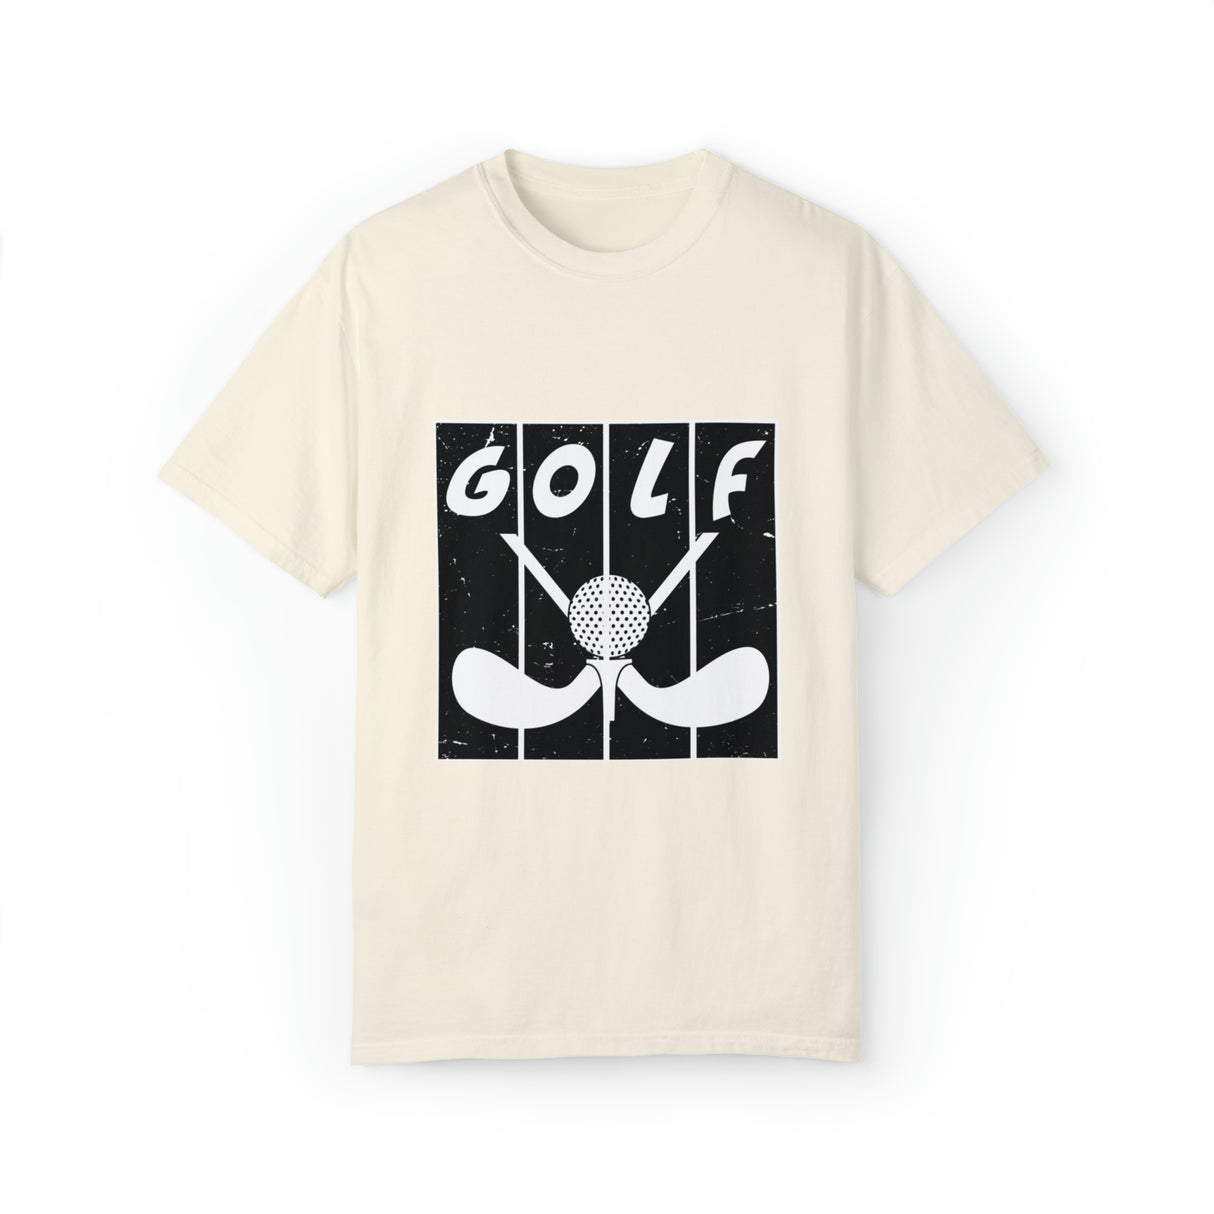 GOLF BOARD B/W Garment-Dyed T-shirt